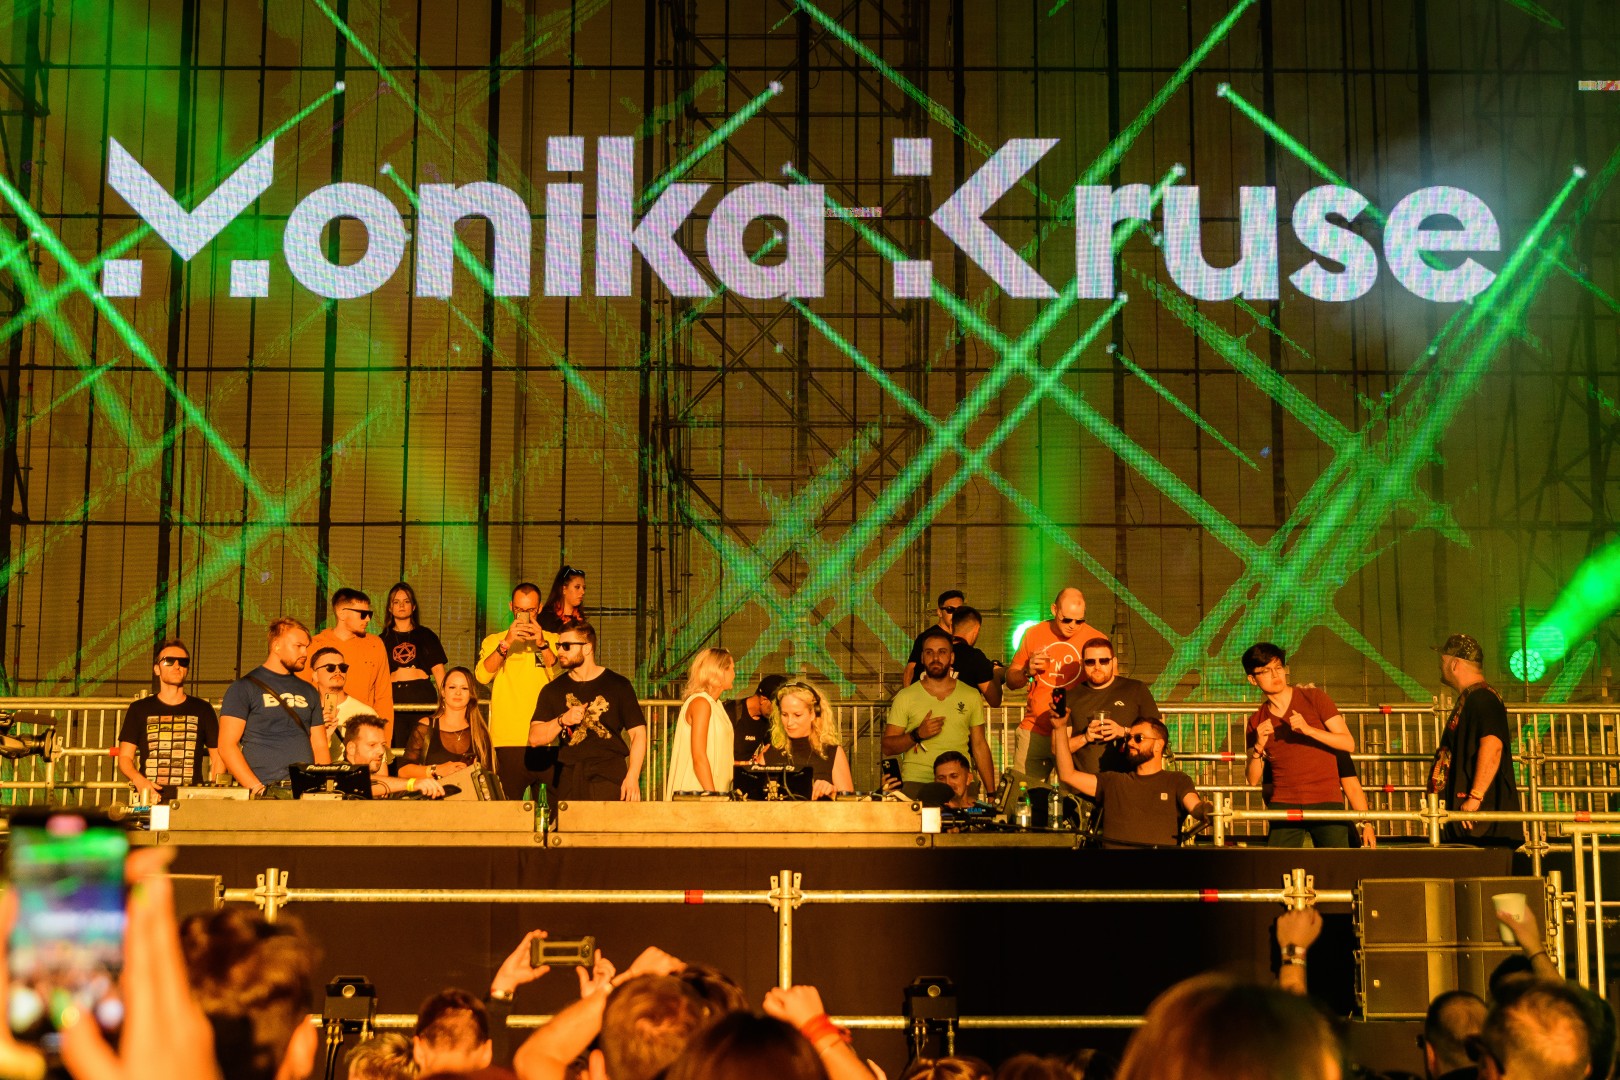 Monika Kruse at Romaero in Bucharest on September 12, 2021 (ff6912e210)